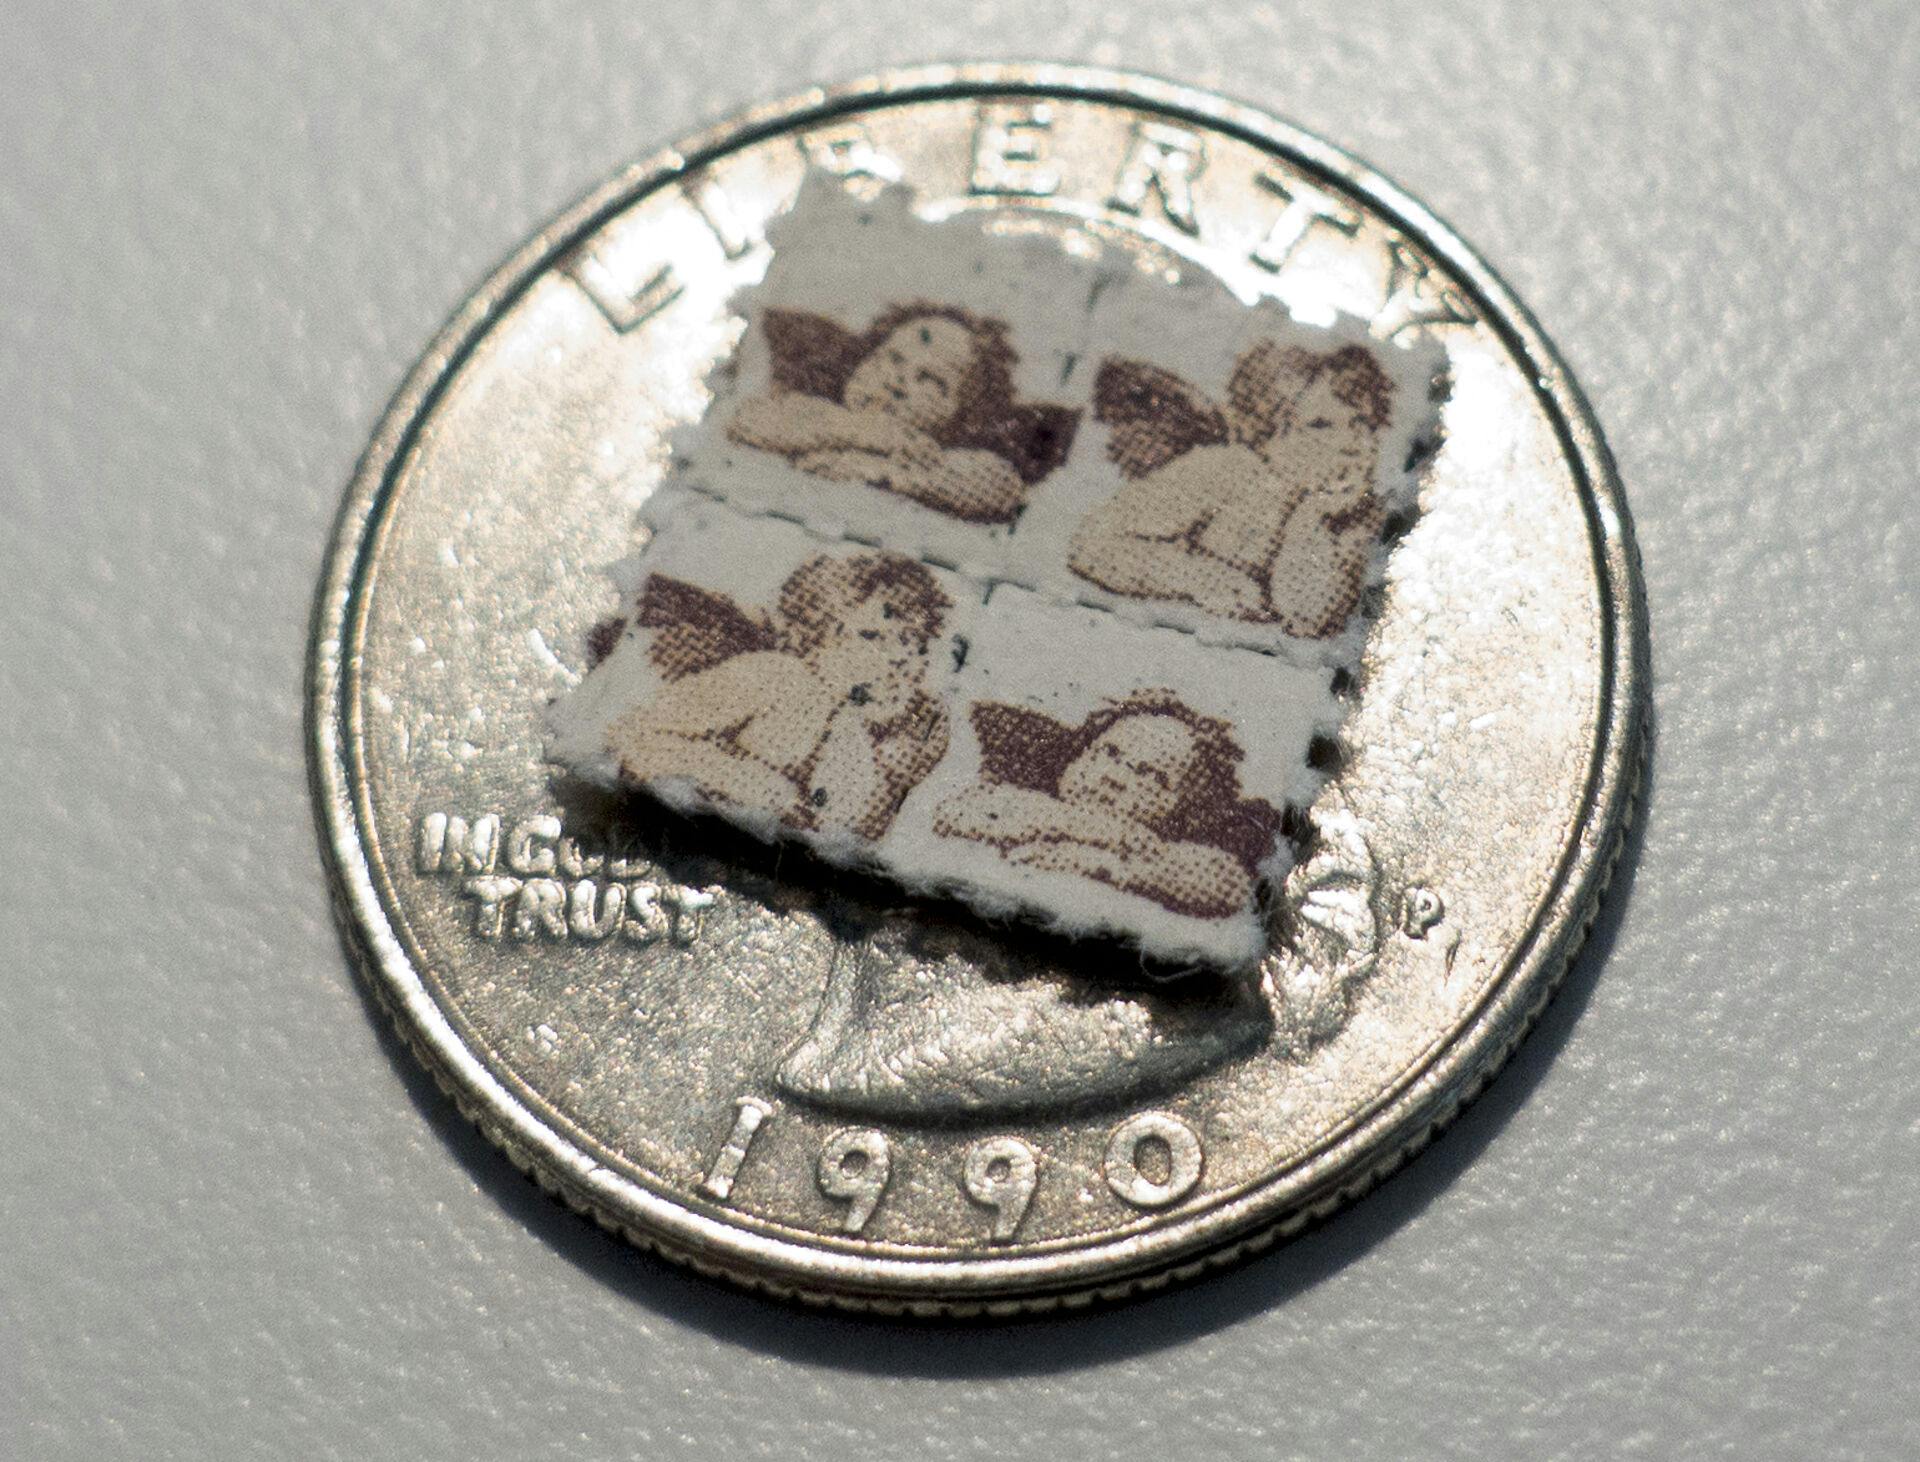 På billedet ses såkaldte frimærker, hvor der er påført stoffet LSD. Toldere fandt blandt andet det potente stof i en pakke med legetøj.